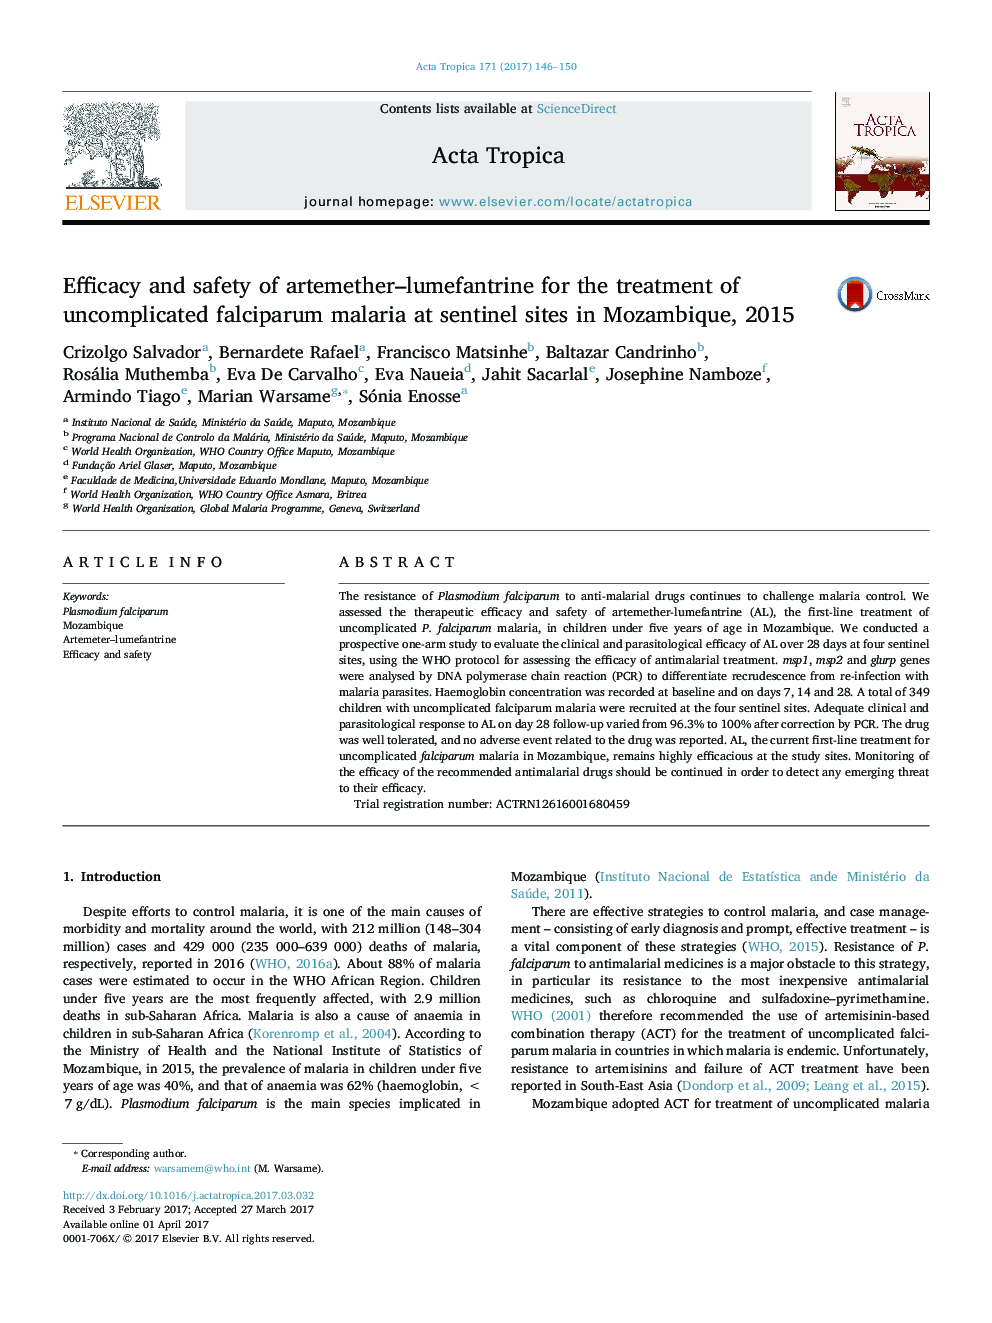 اثربخشی و ایمنی آرتمتر-لومفانتریین برای درمان مالاریا فالسیپاروم بدون عارضه در سایت های نگهبان در موزامبیک، 2015 